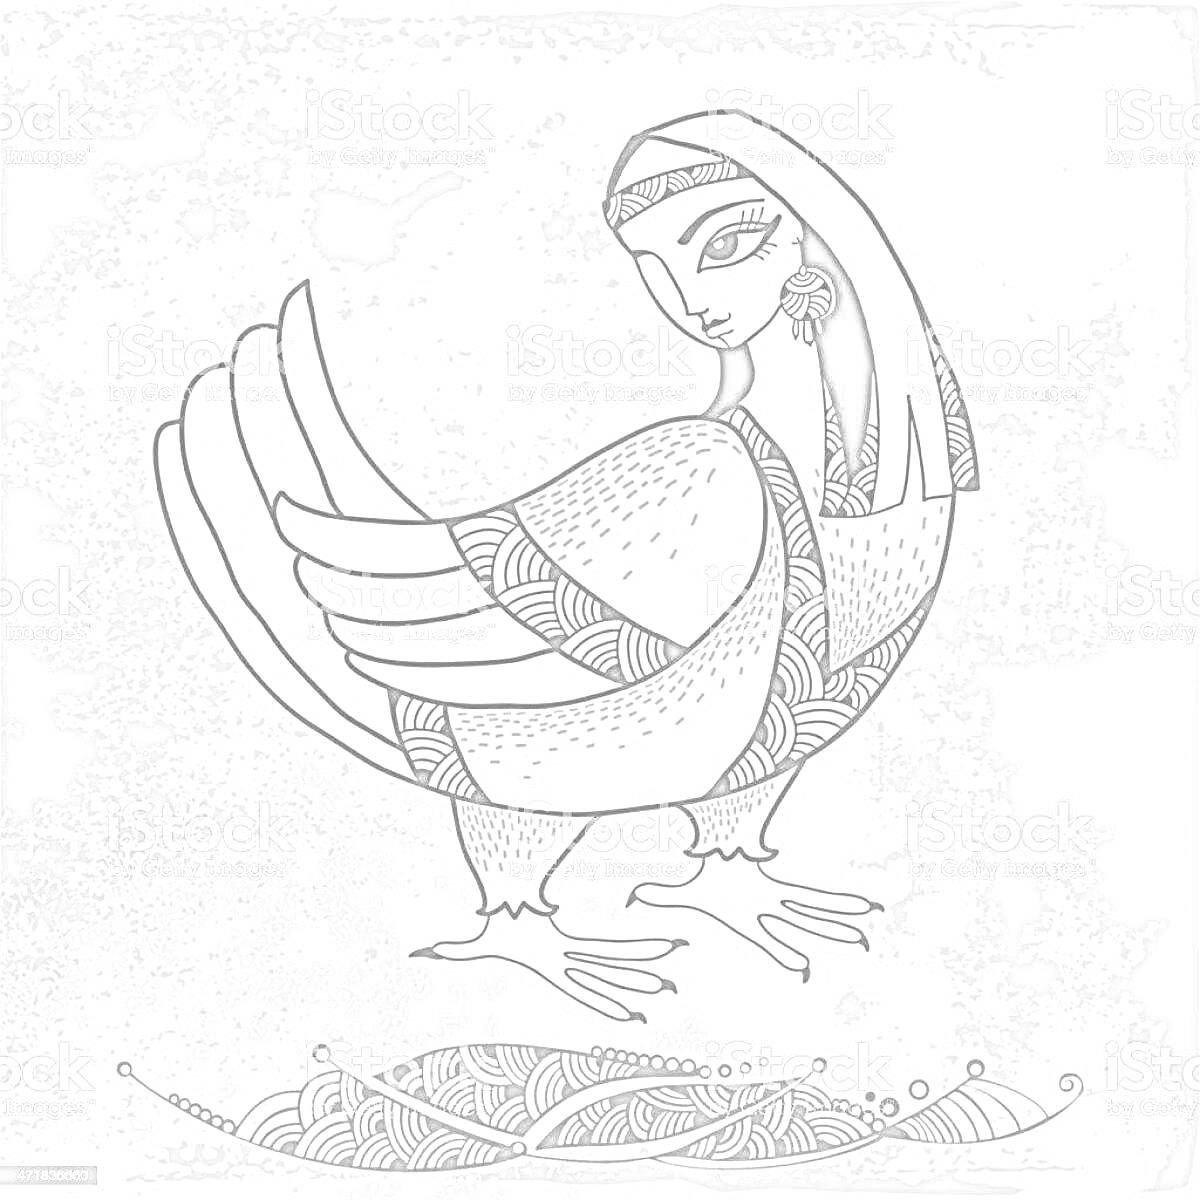 Раскраска Сирин птица с украшенной головой и перьями, голова девушки с серьгой, орнамент на хвосте